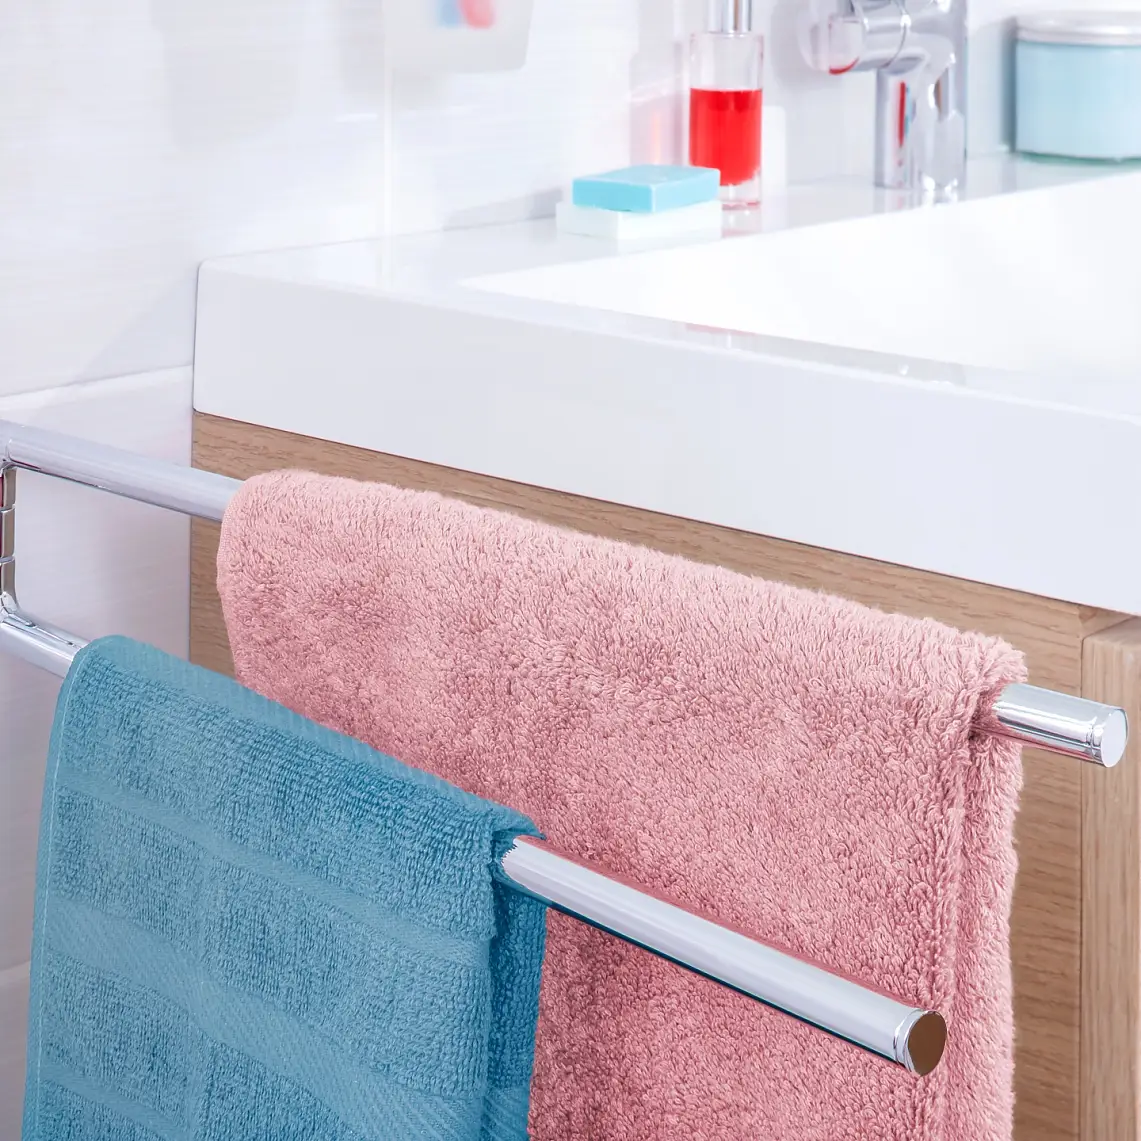 Cuelga las toallas cerca de donde las necesites y ofréceles espacio para que se puedan secar después de usarlas.